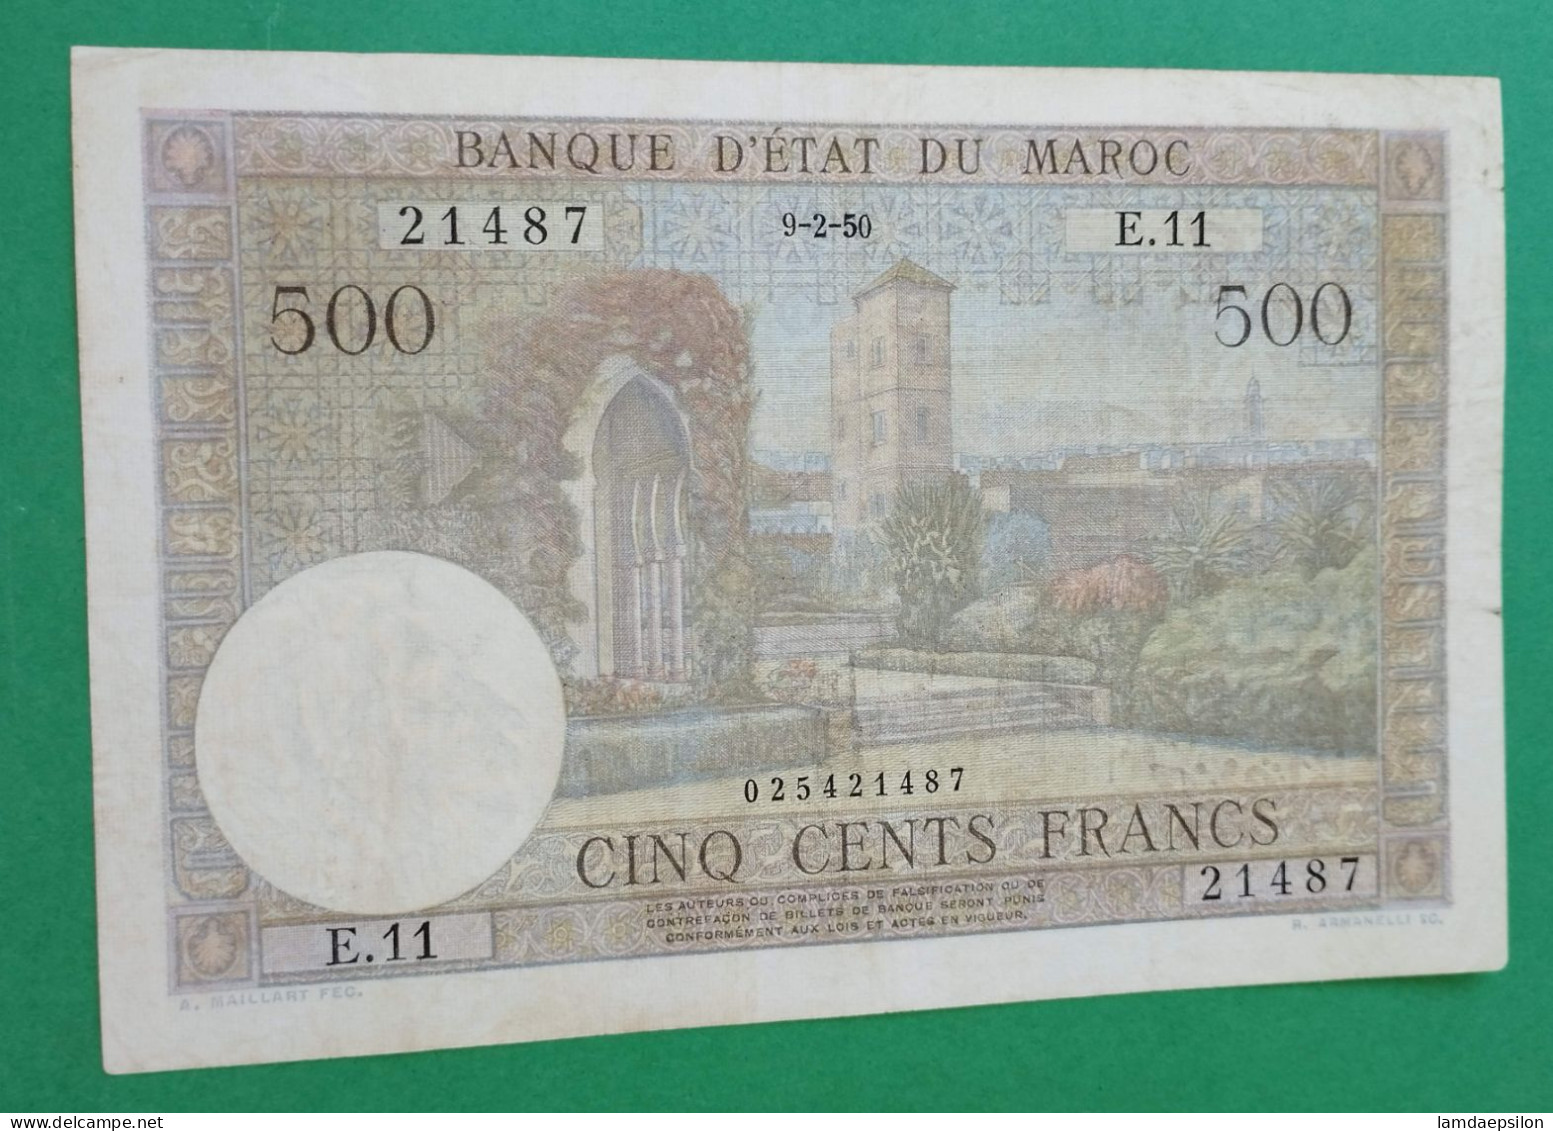 BANQUE D'ETAT DU  MAROC MOROCCO  MARRUECOS 500 FRANCS 9-2-1950 - Morocco